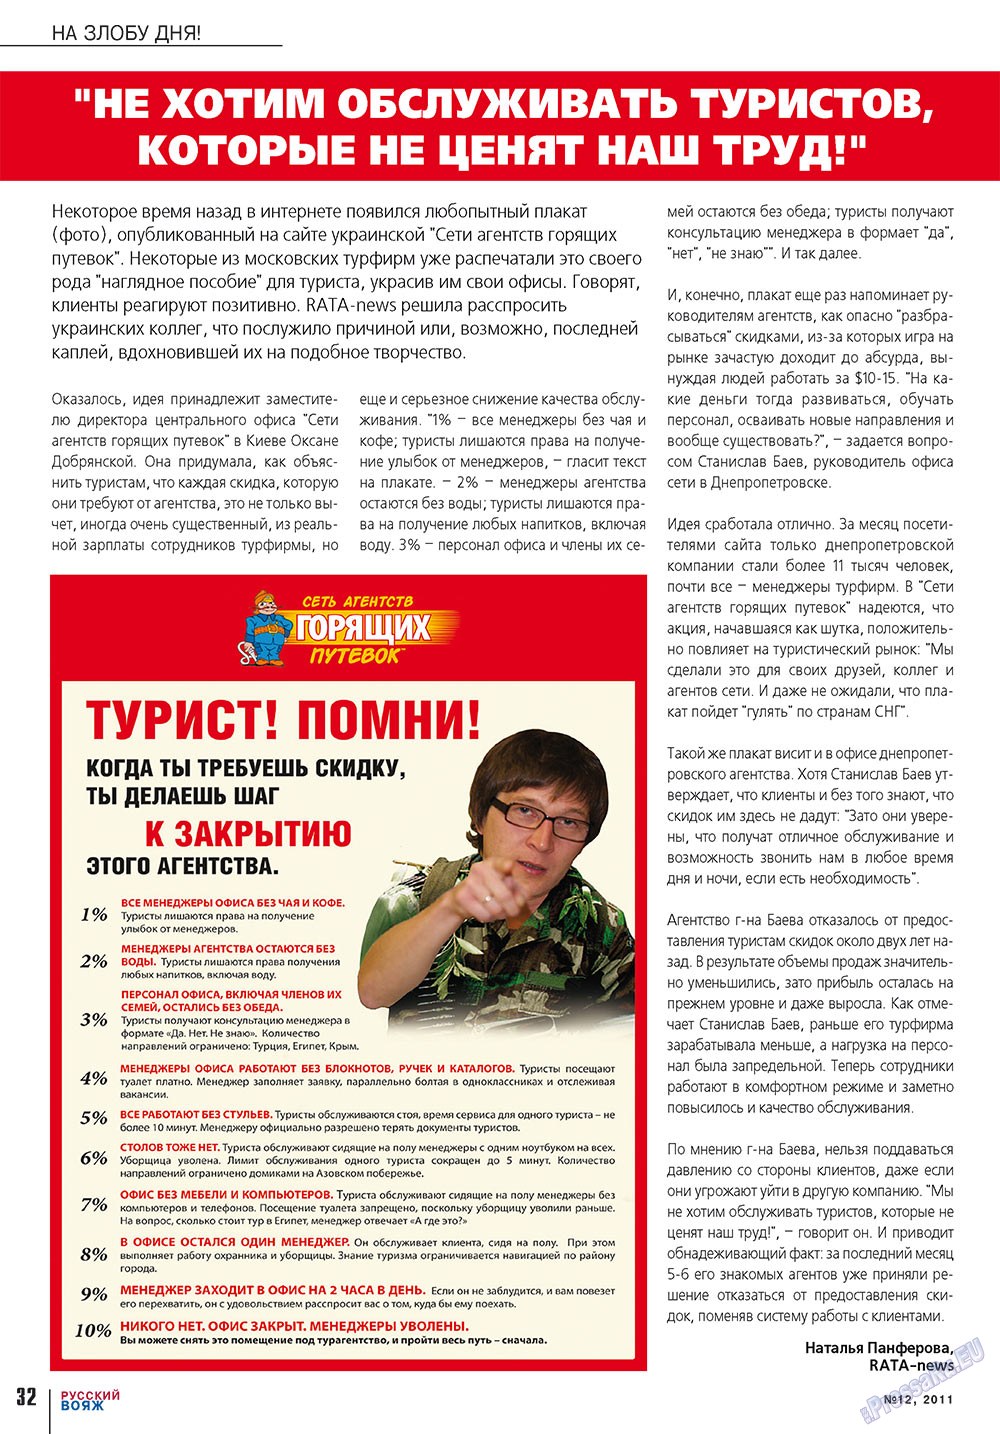 Русский вояж (журнал). 2011 год, номер 12, стр. 32